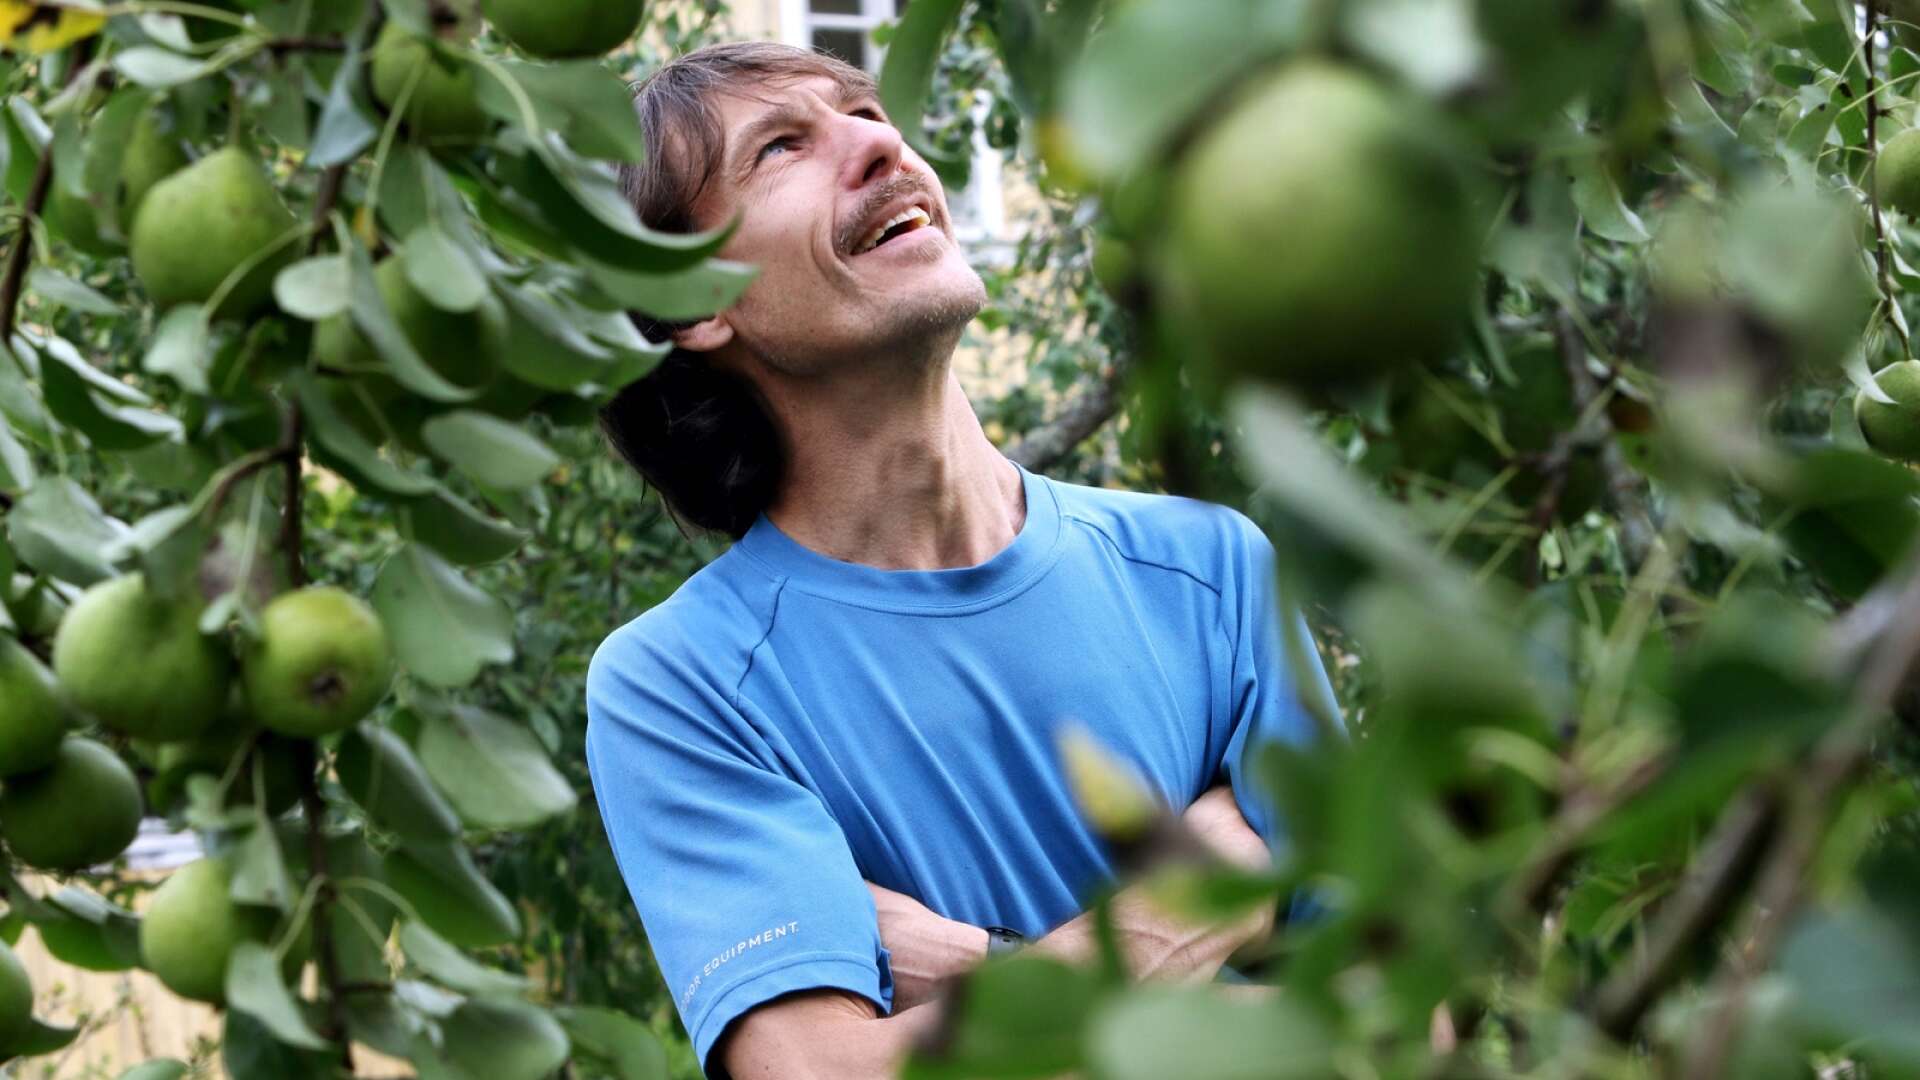 En trädgård full av frukt, det är Emil Karléns verklighet. Ekeskogsbon delar gärna med sig av sina päron och äpplen till andra.